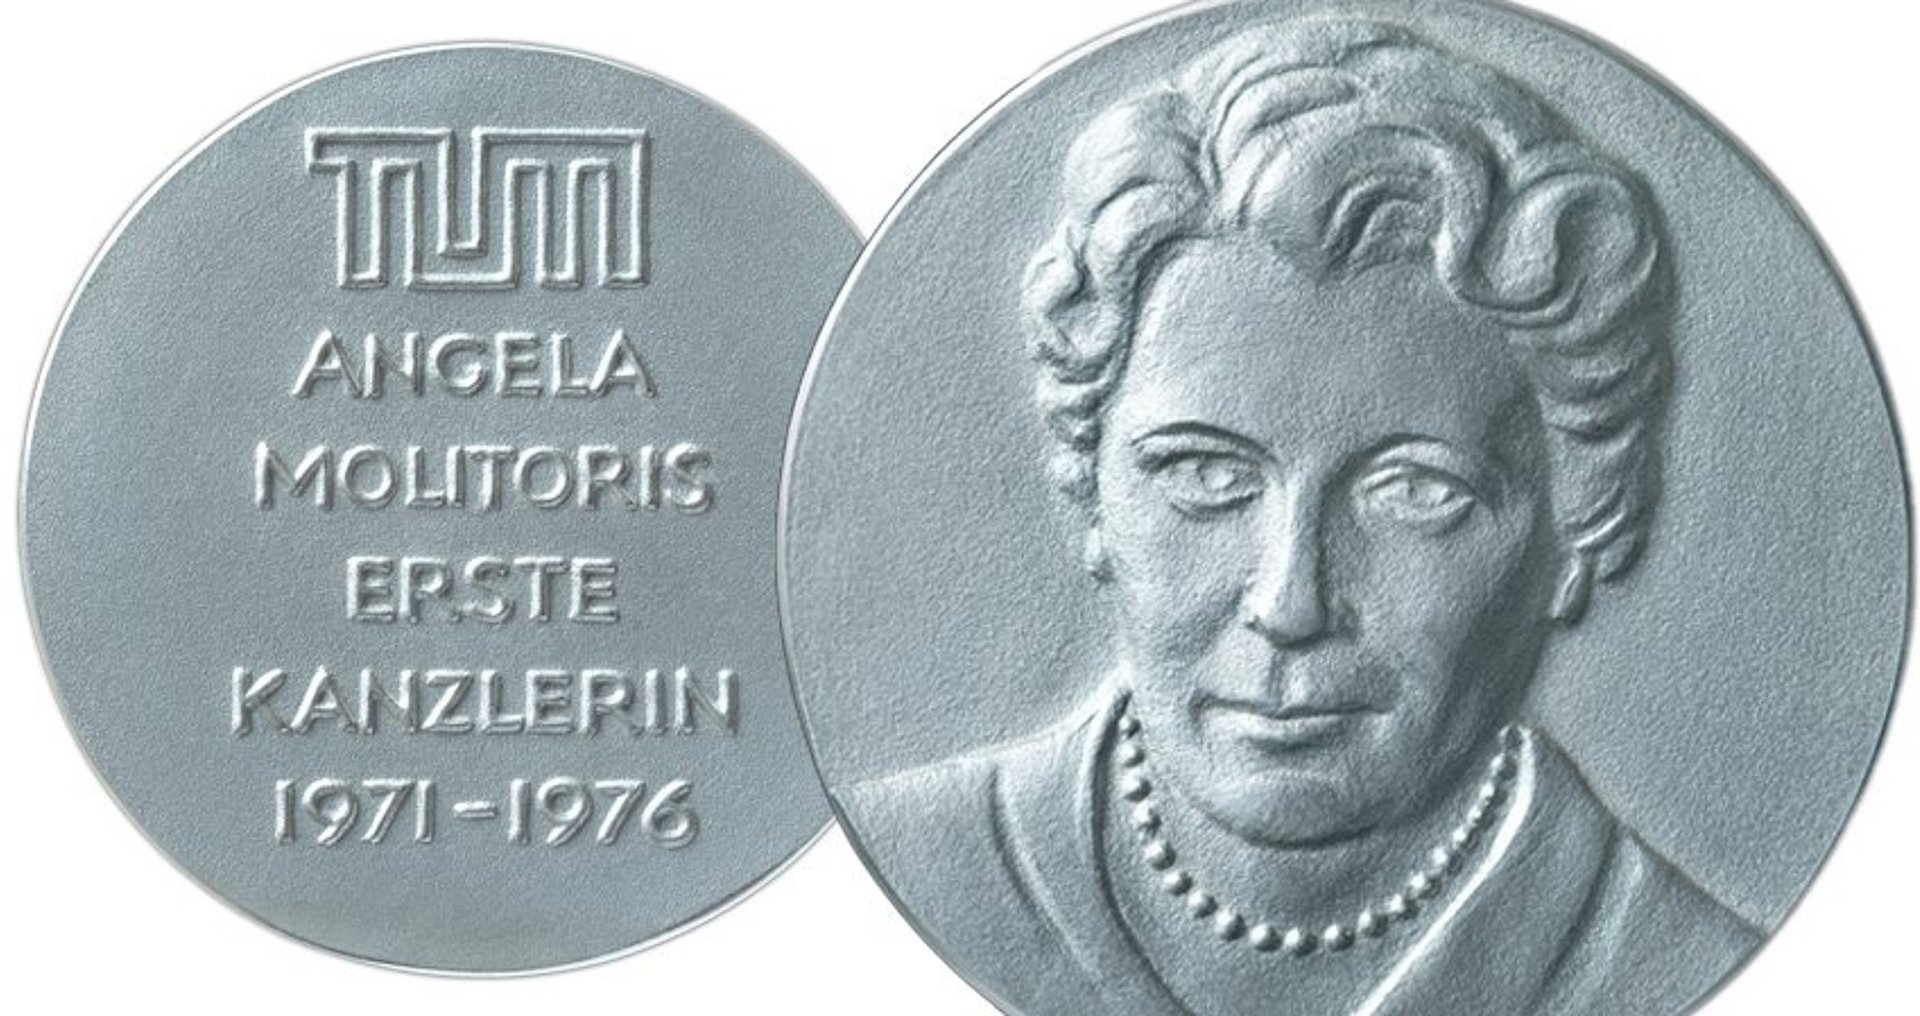 Die Medaille für den Angela Molitoris Diversity Award